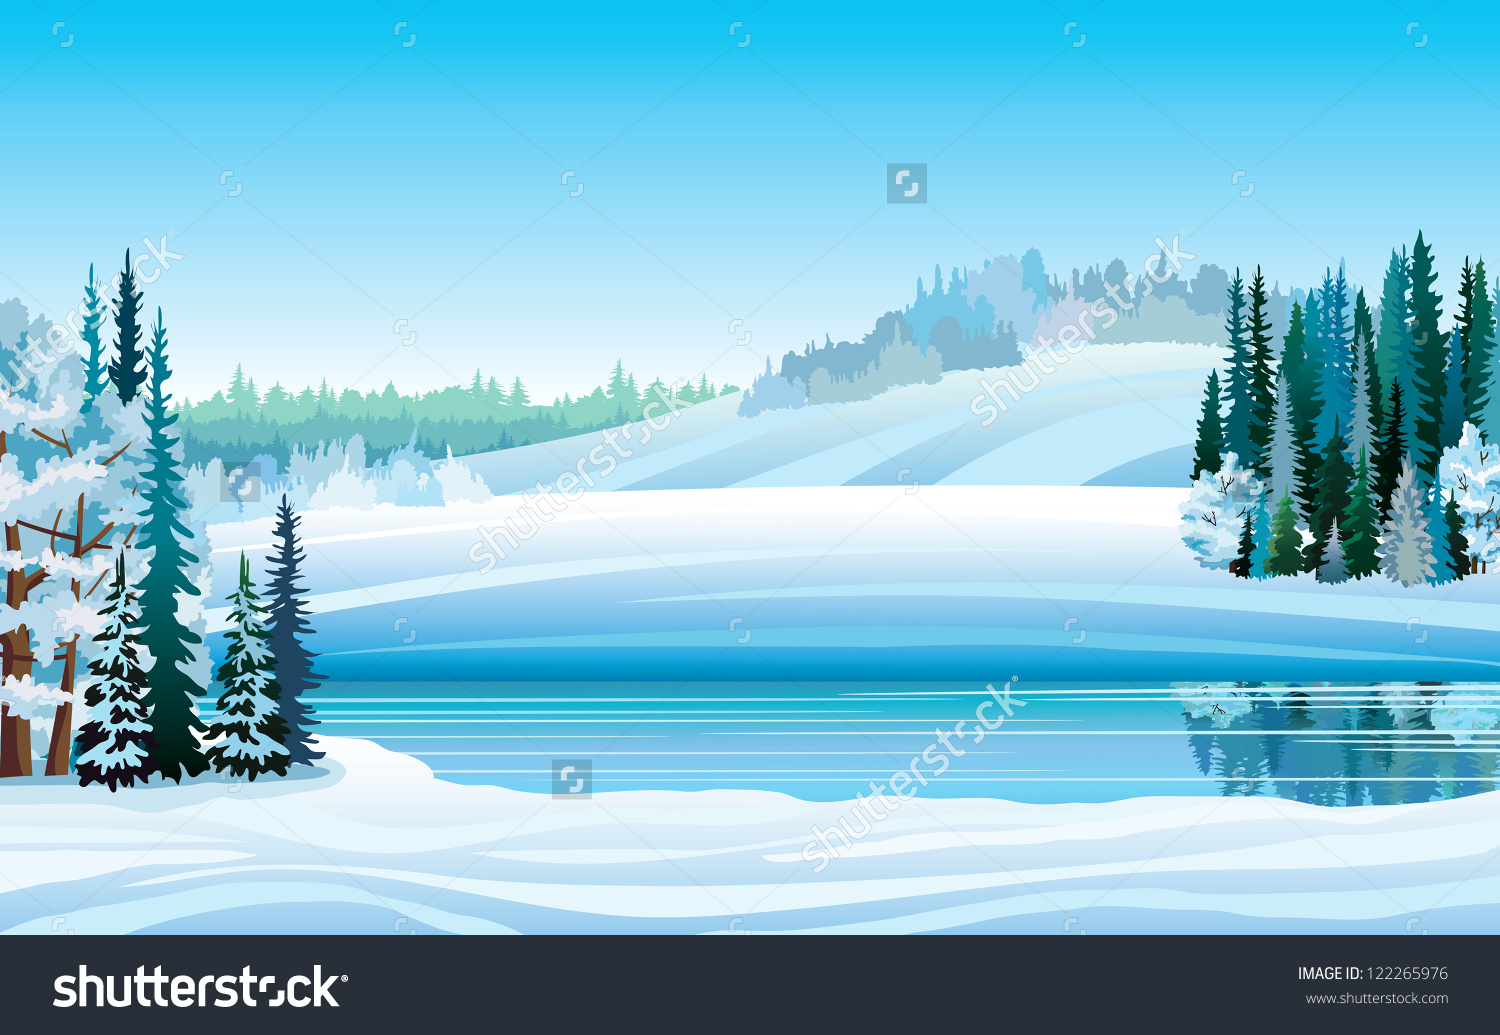 winter landscape clipart - photo #15